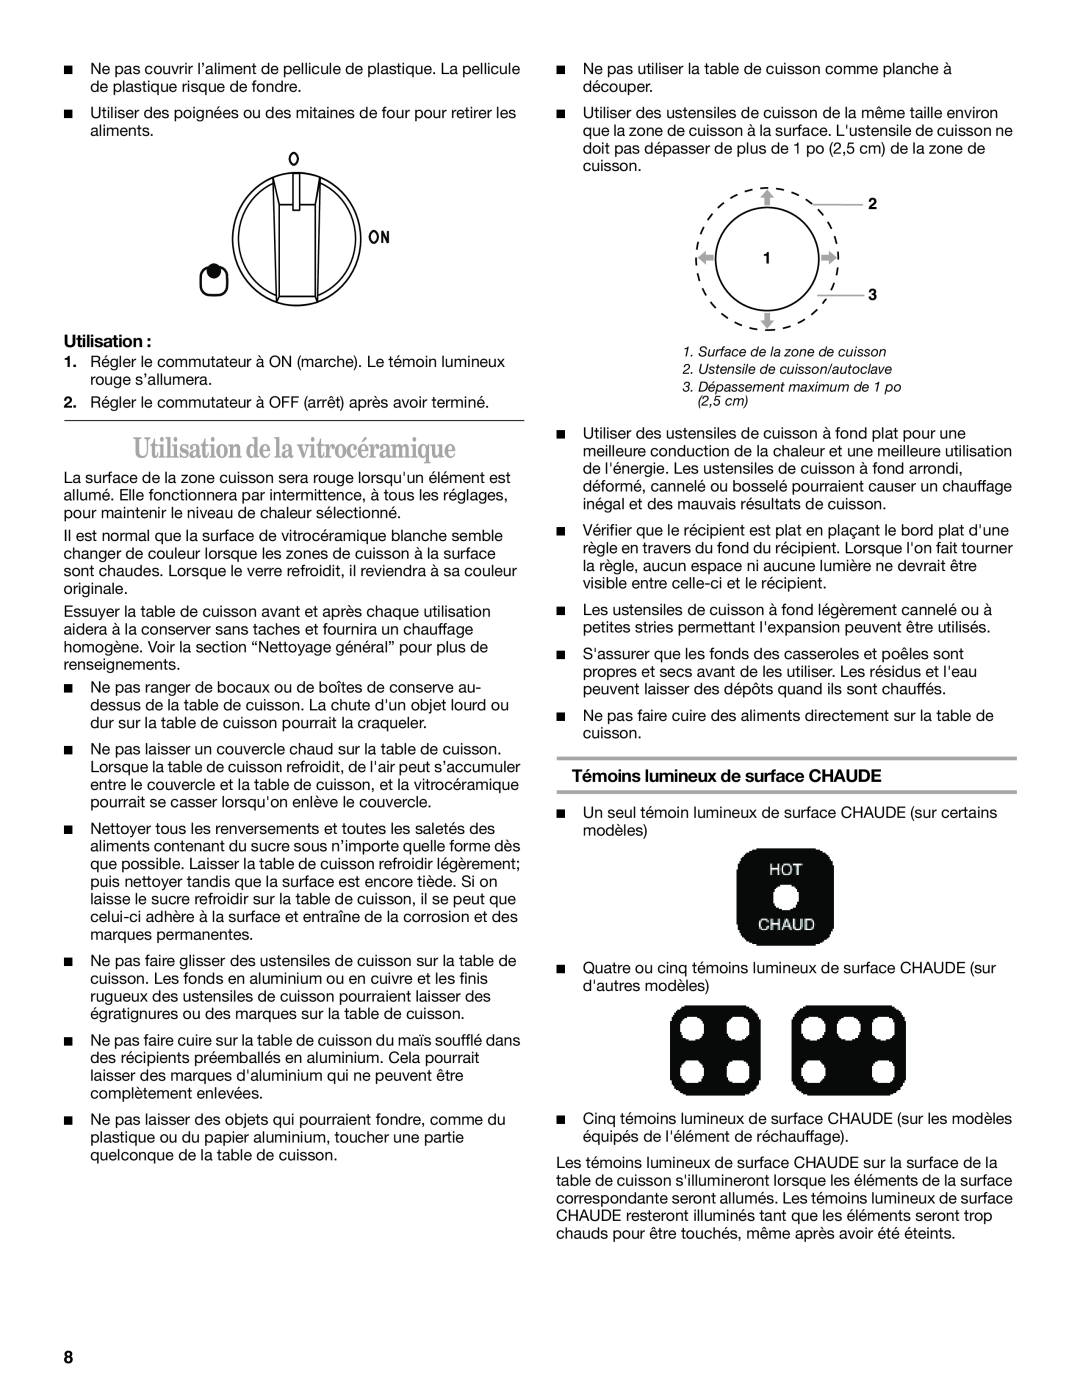 Whirlpool GY395LXGB0 manual Utilisation de la vitrocéramique, Témoins lumineux de surface CHAUDE 